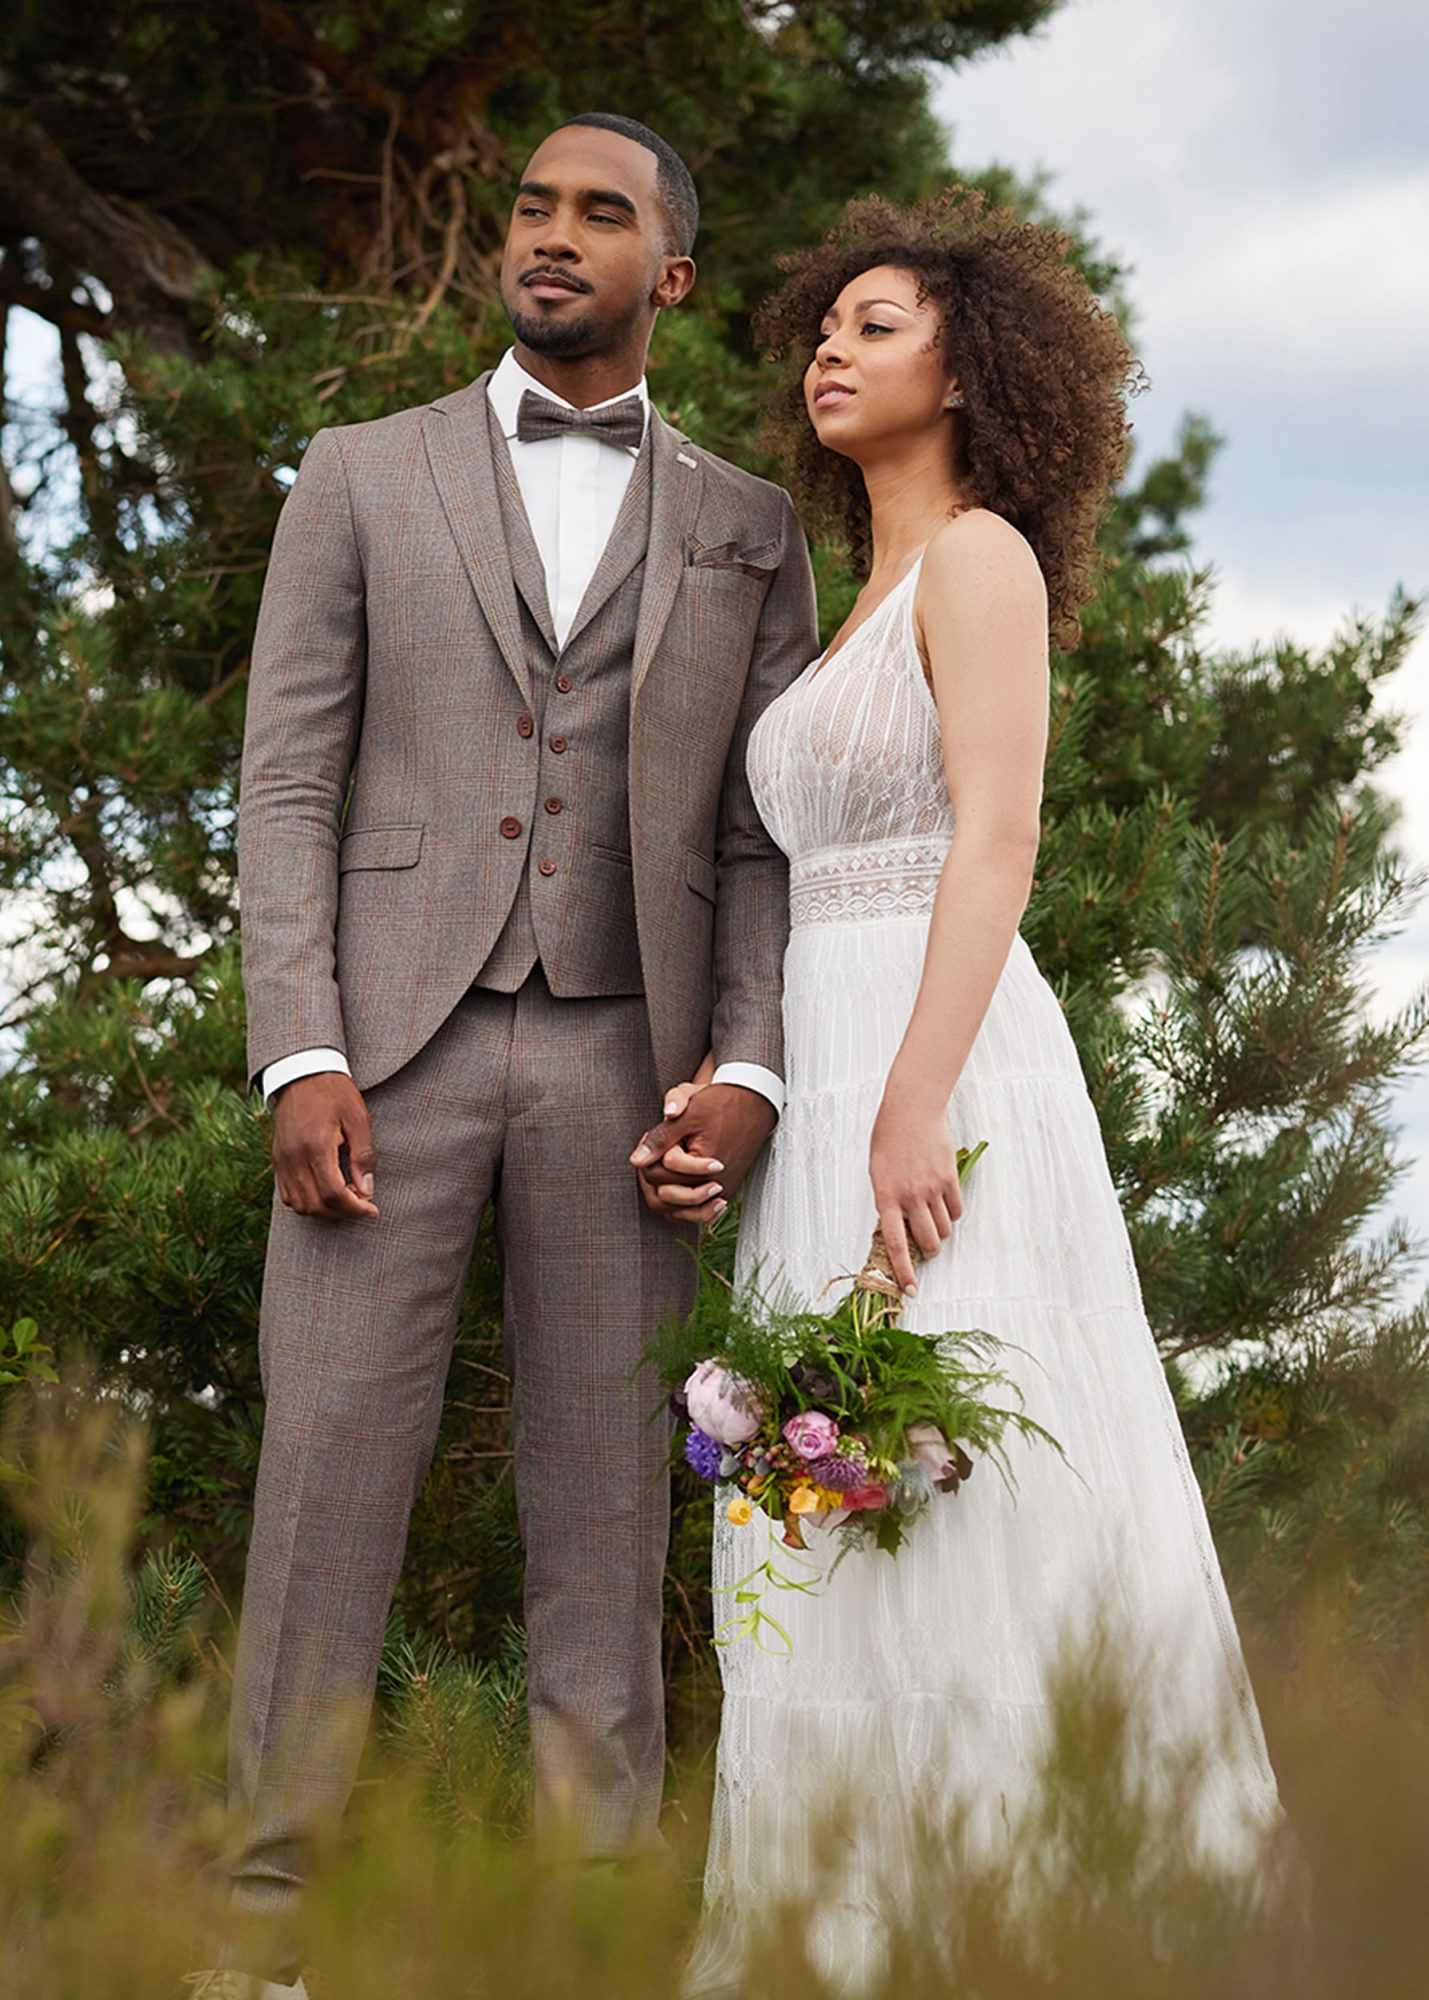 Brautpaar in der Natur. Bräutigam trägt einen braunen, karierten Anzug. Braut trägt ein schlichtes Hochzeitskleid.